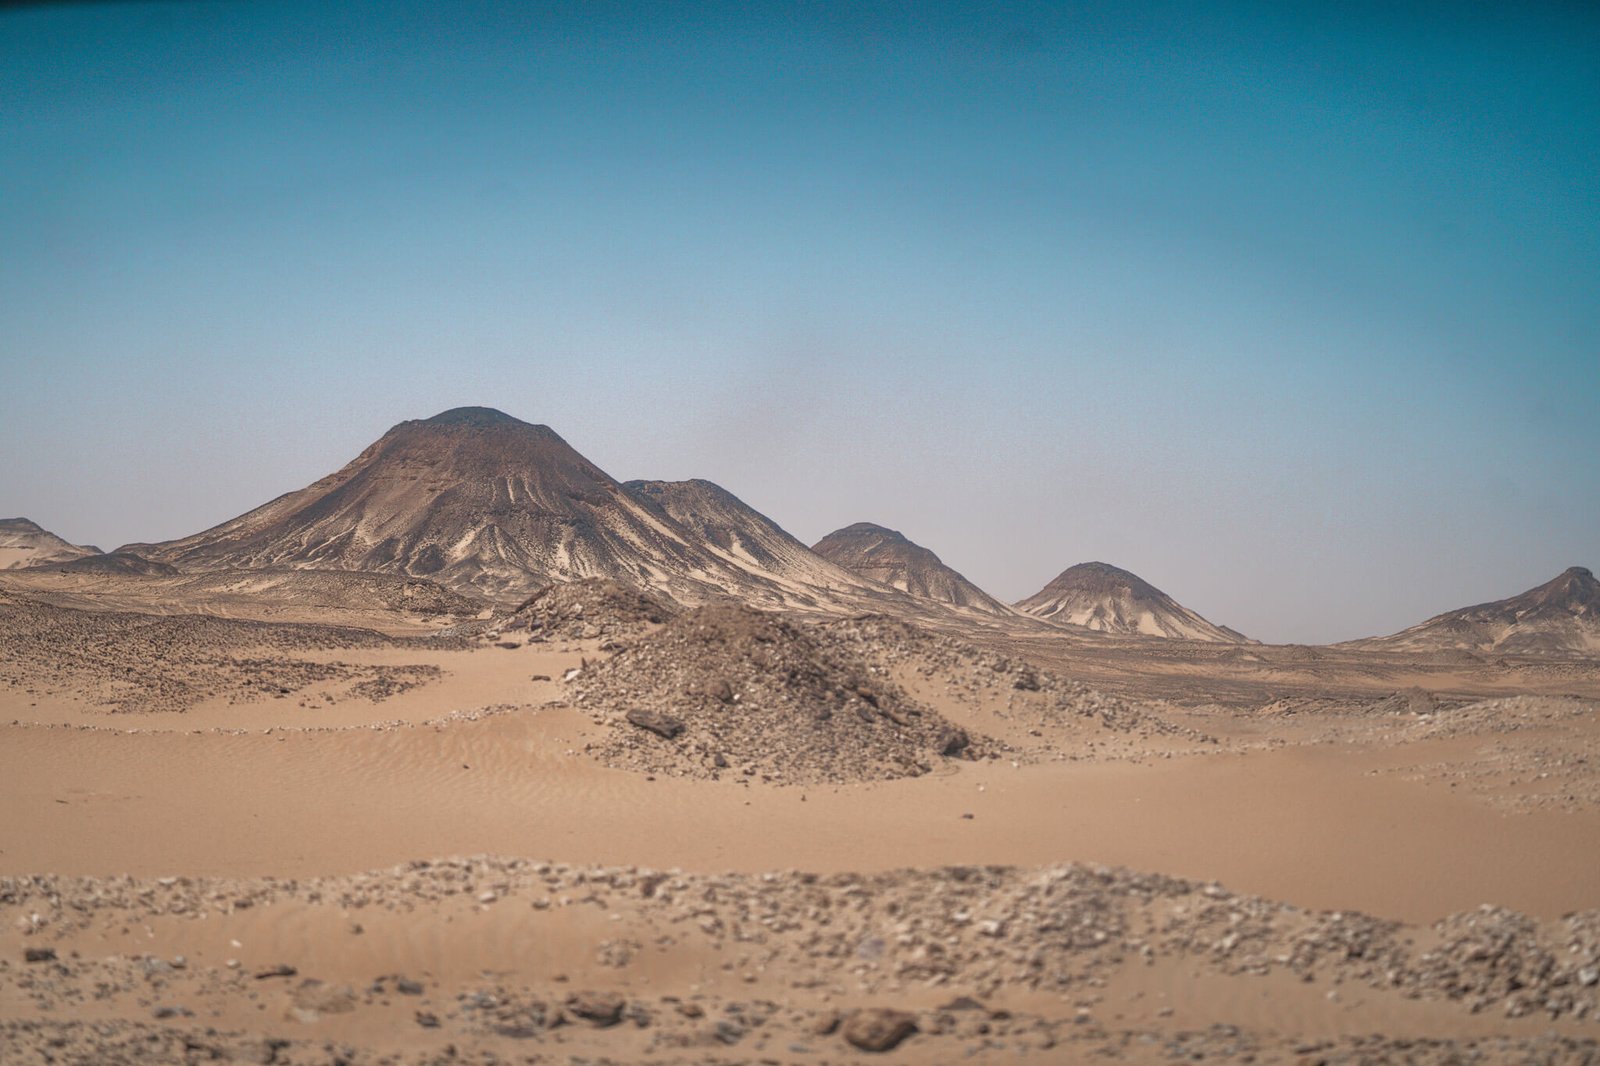 driving through the black desert in Egypt